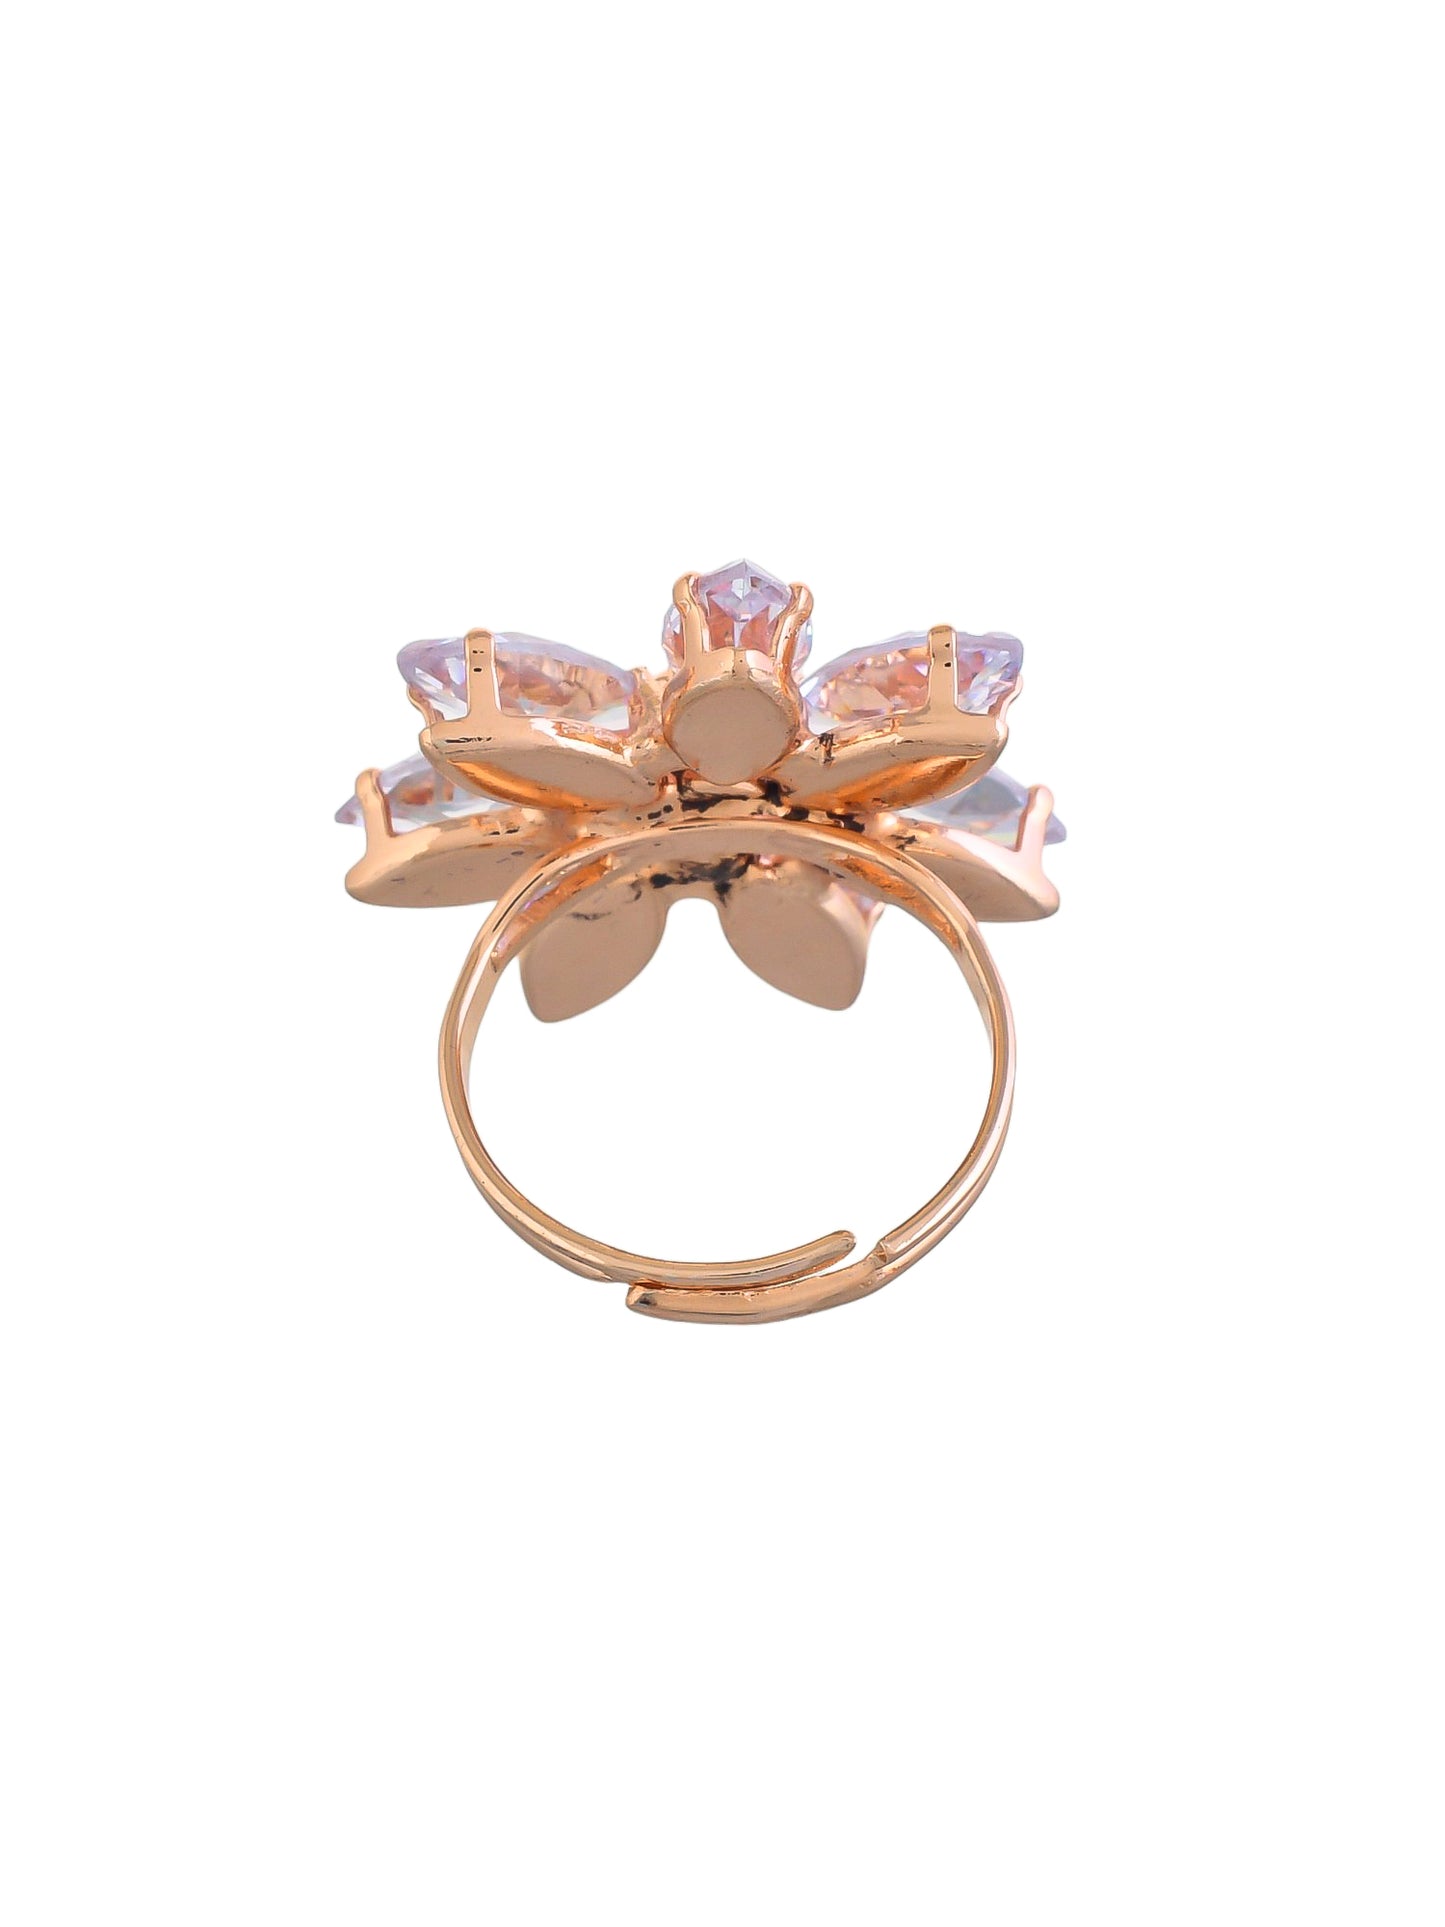 Adjustable flower design american diamond rings for girls & womens.